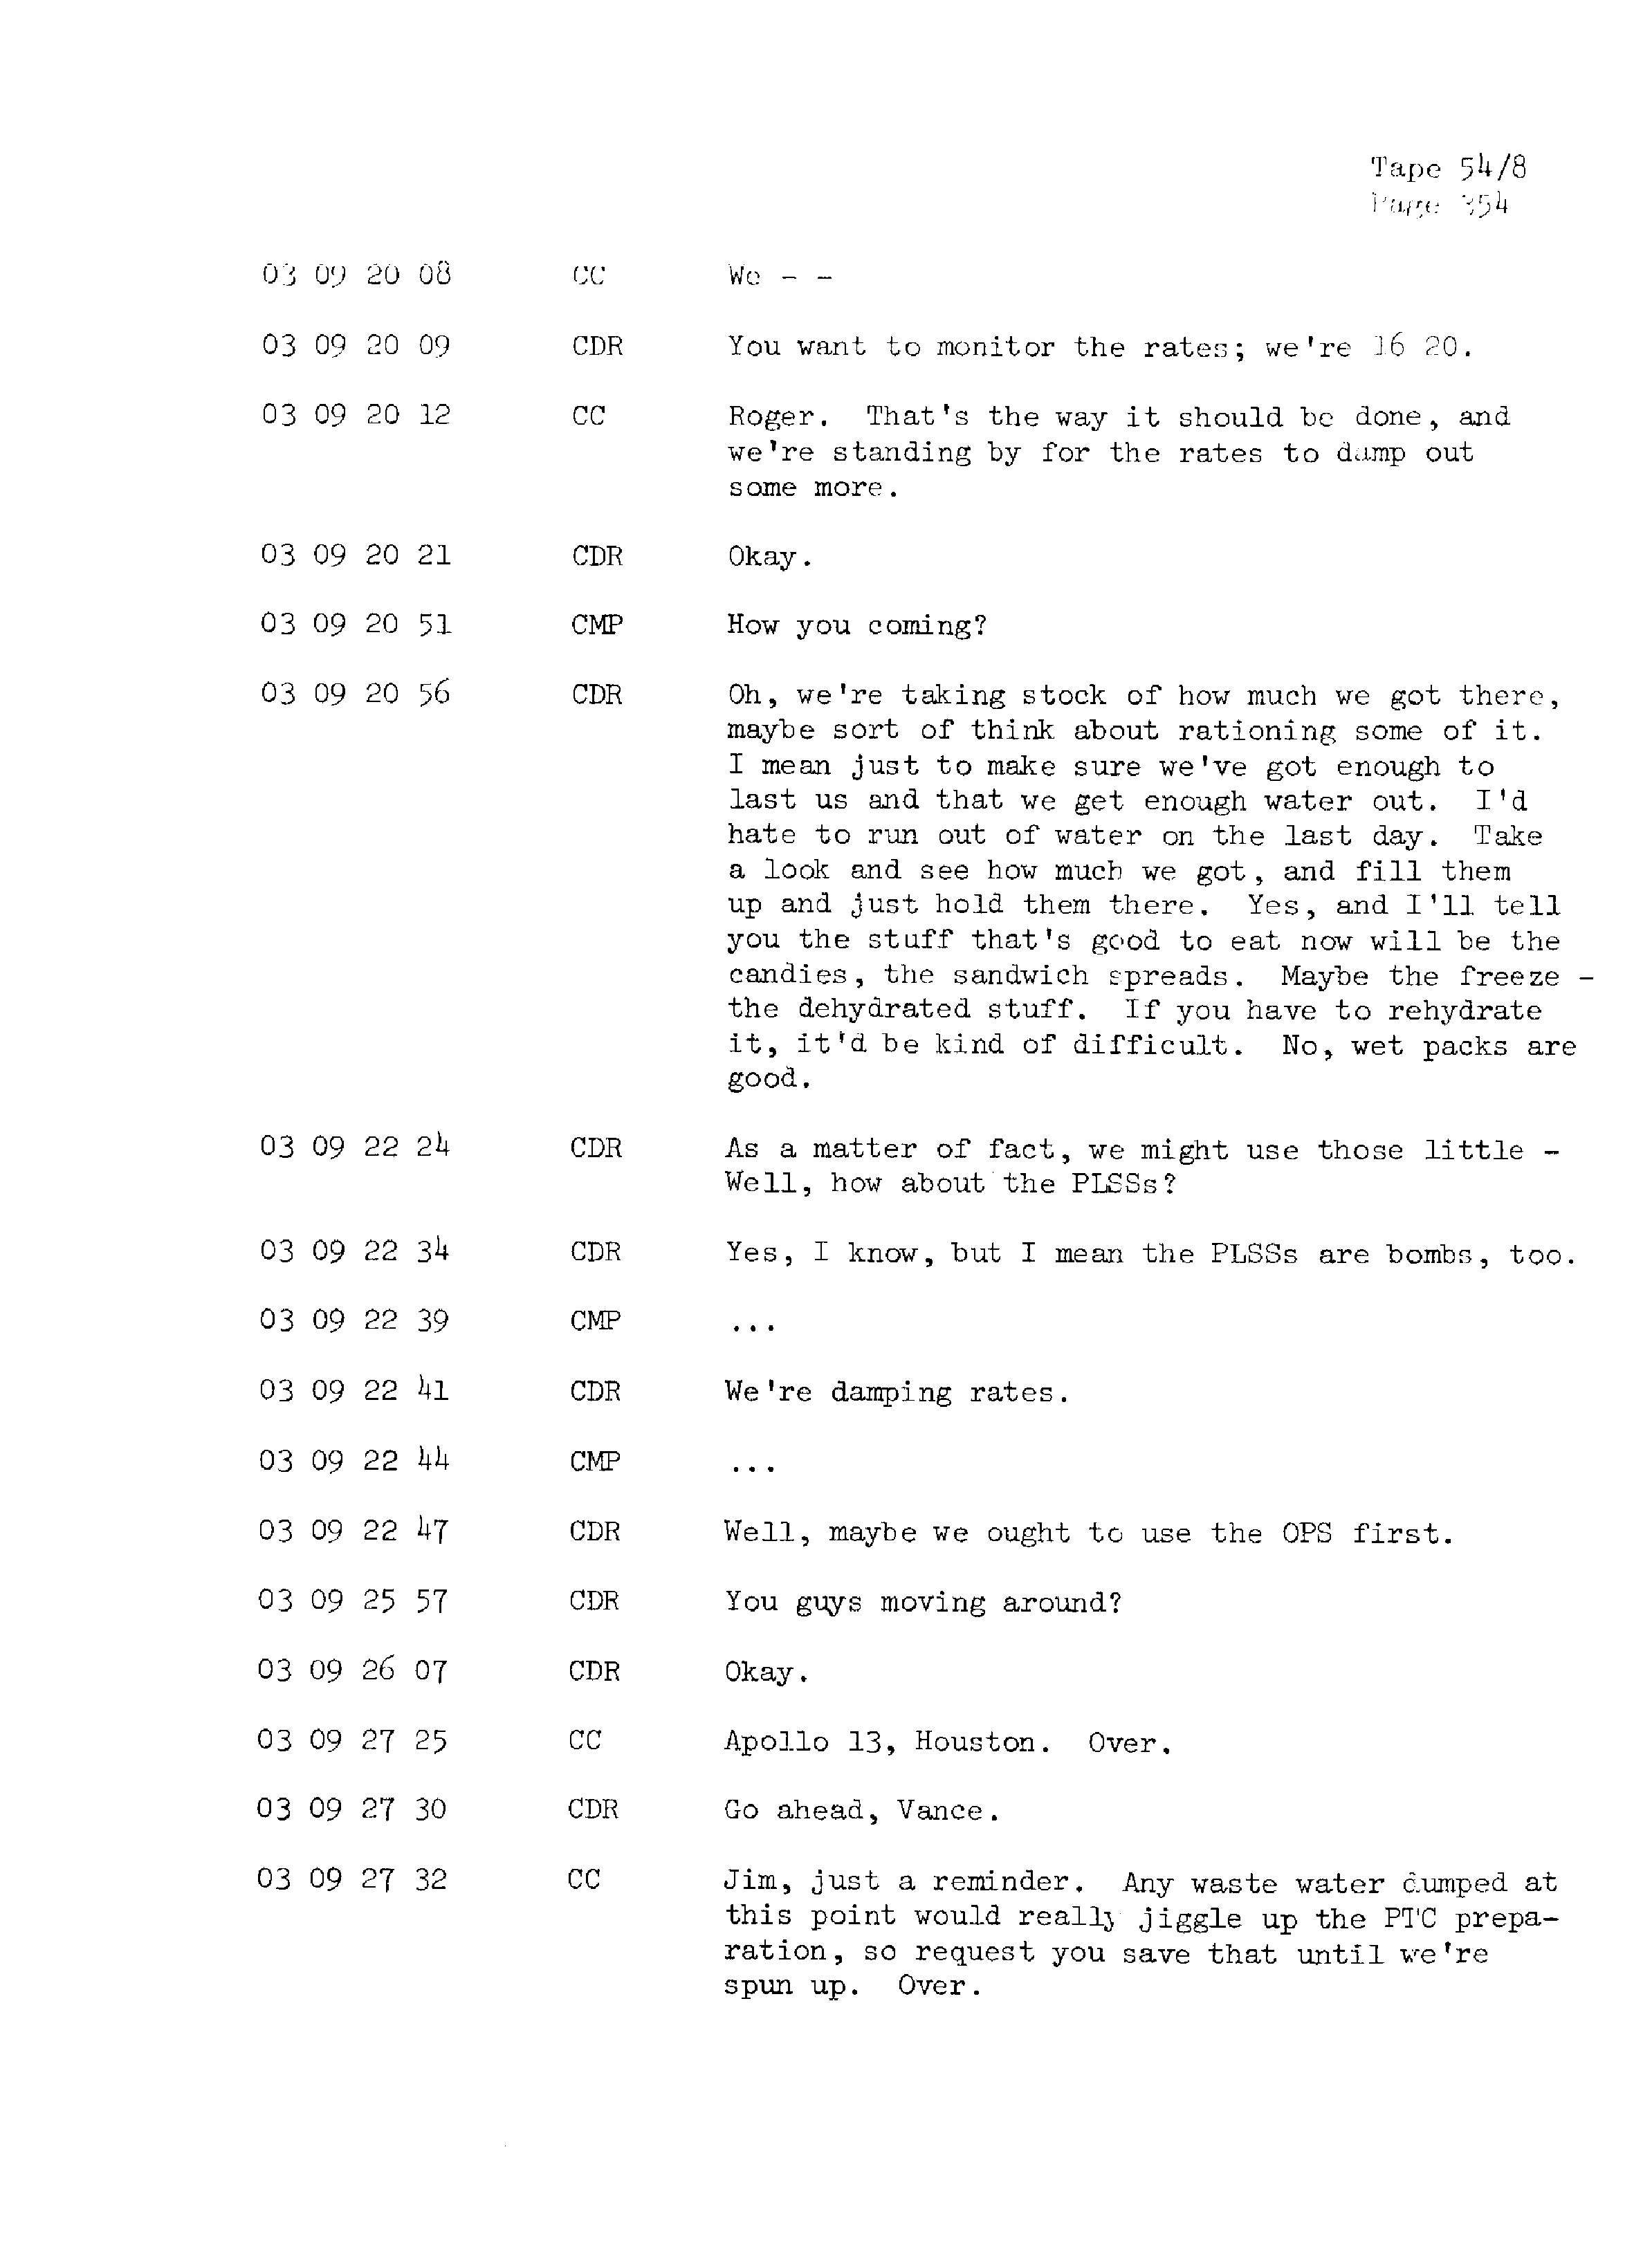 Page 361 of Apollo 13’s original transcript